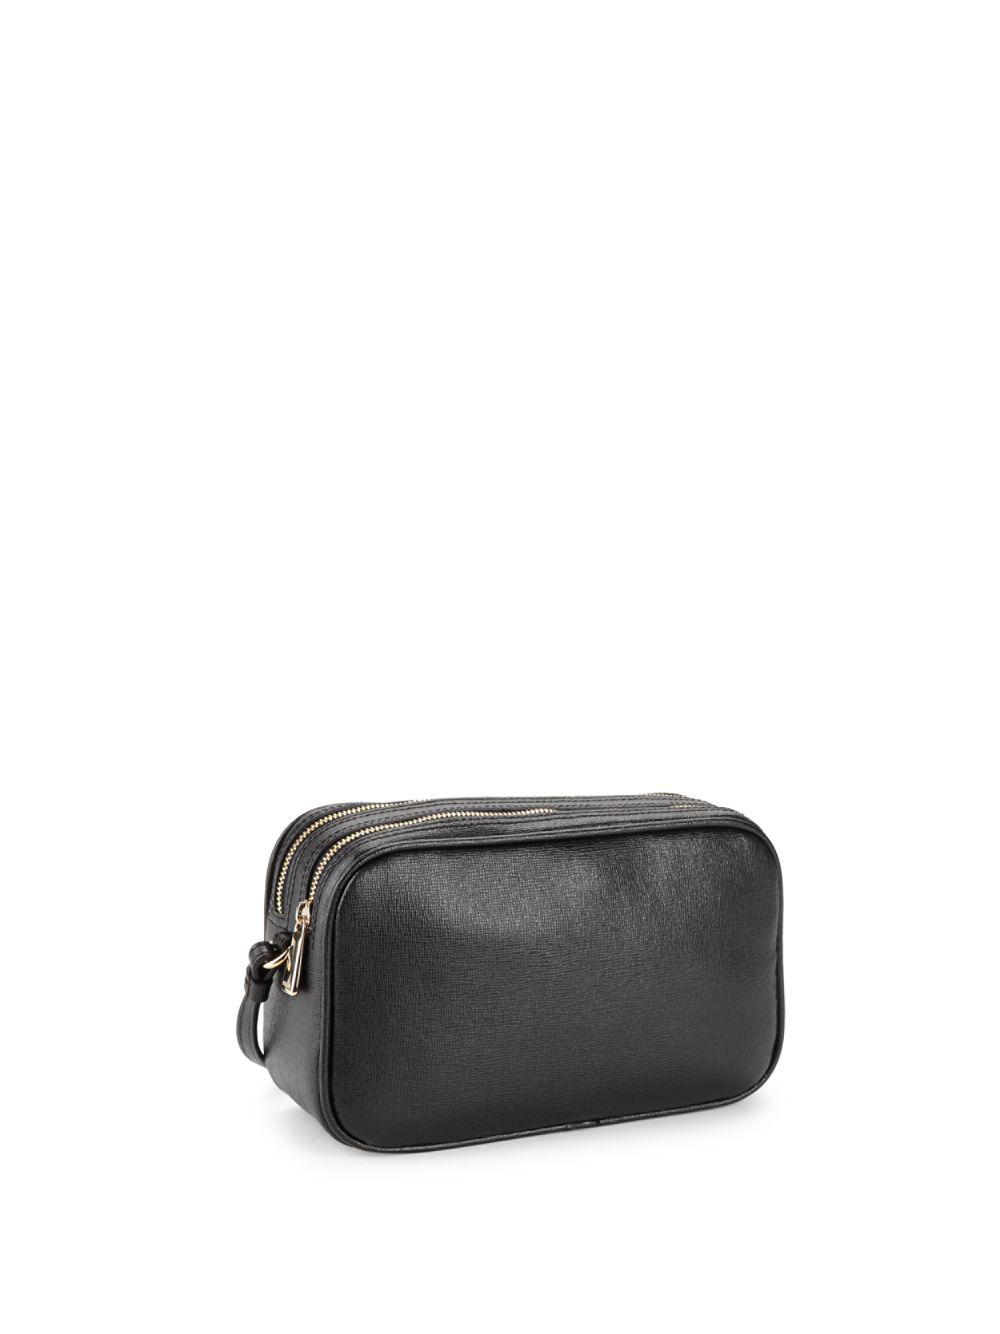 Furla Leather Lilli Xl Crossbody Bag in Black - Lyst